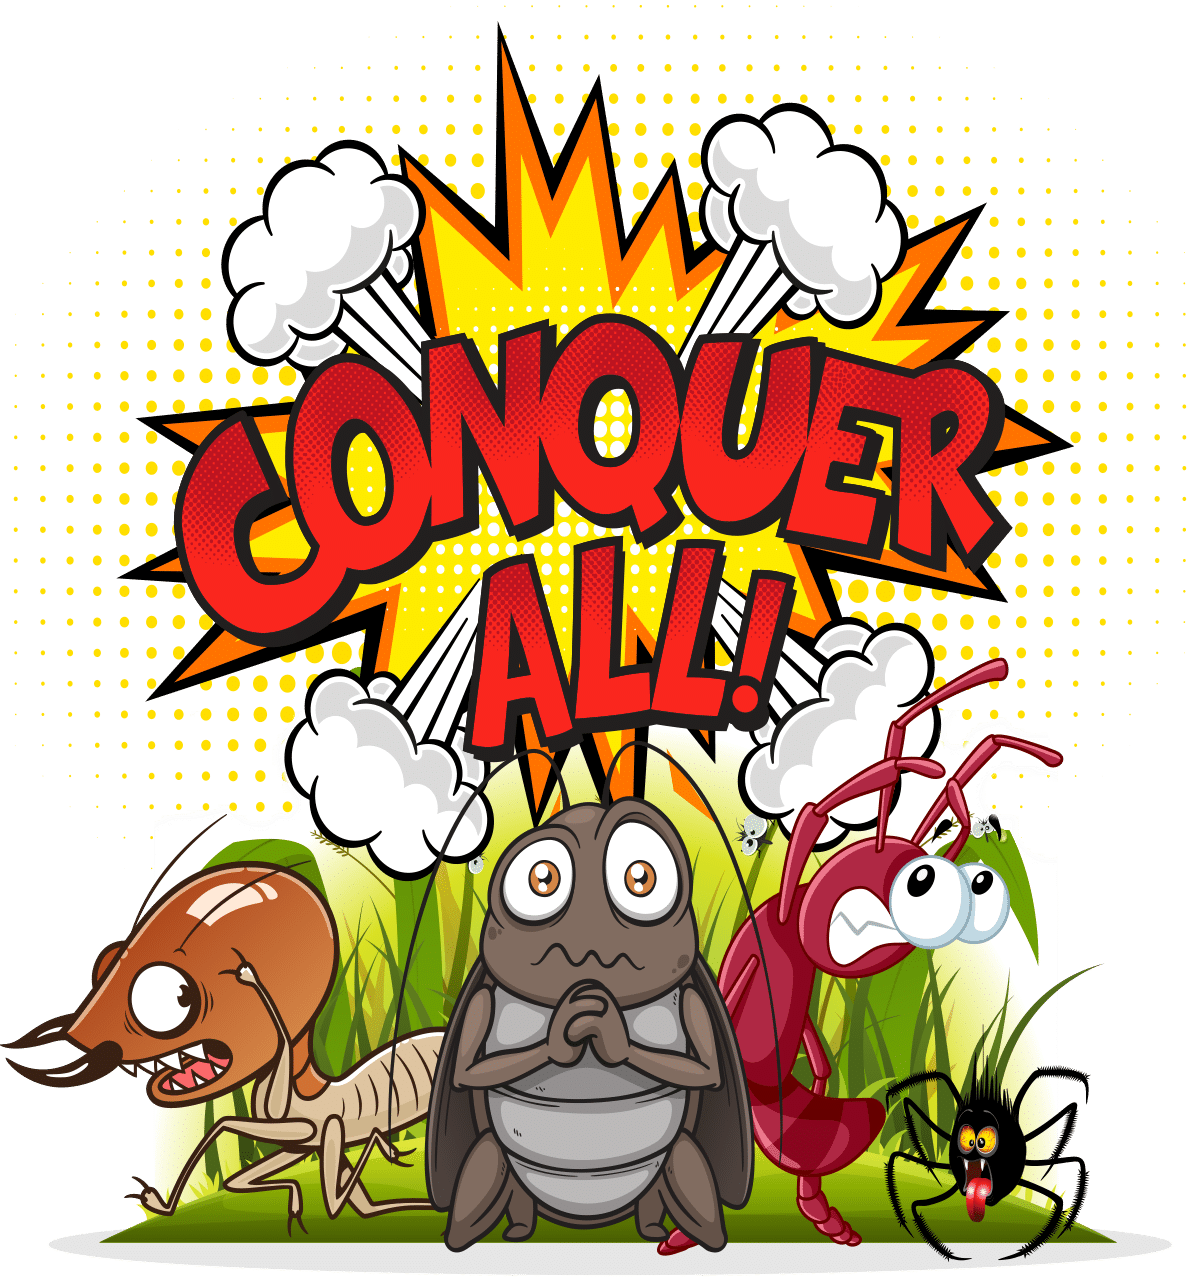 Conquer All Program | One Killer Pest Control Plan